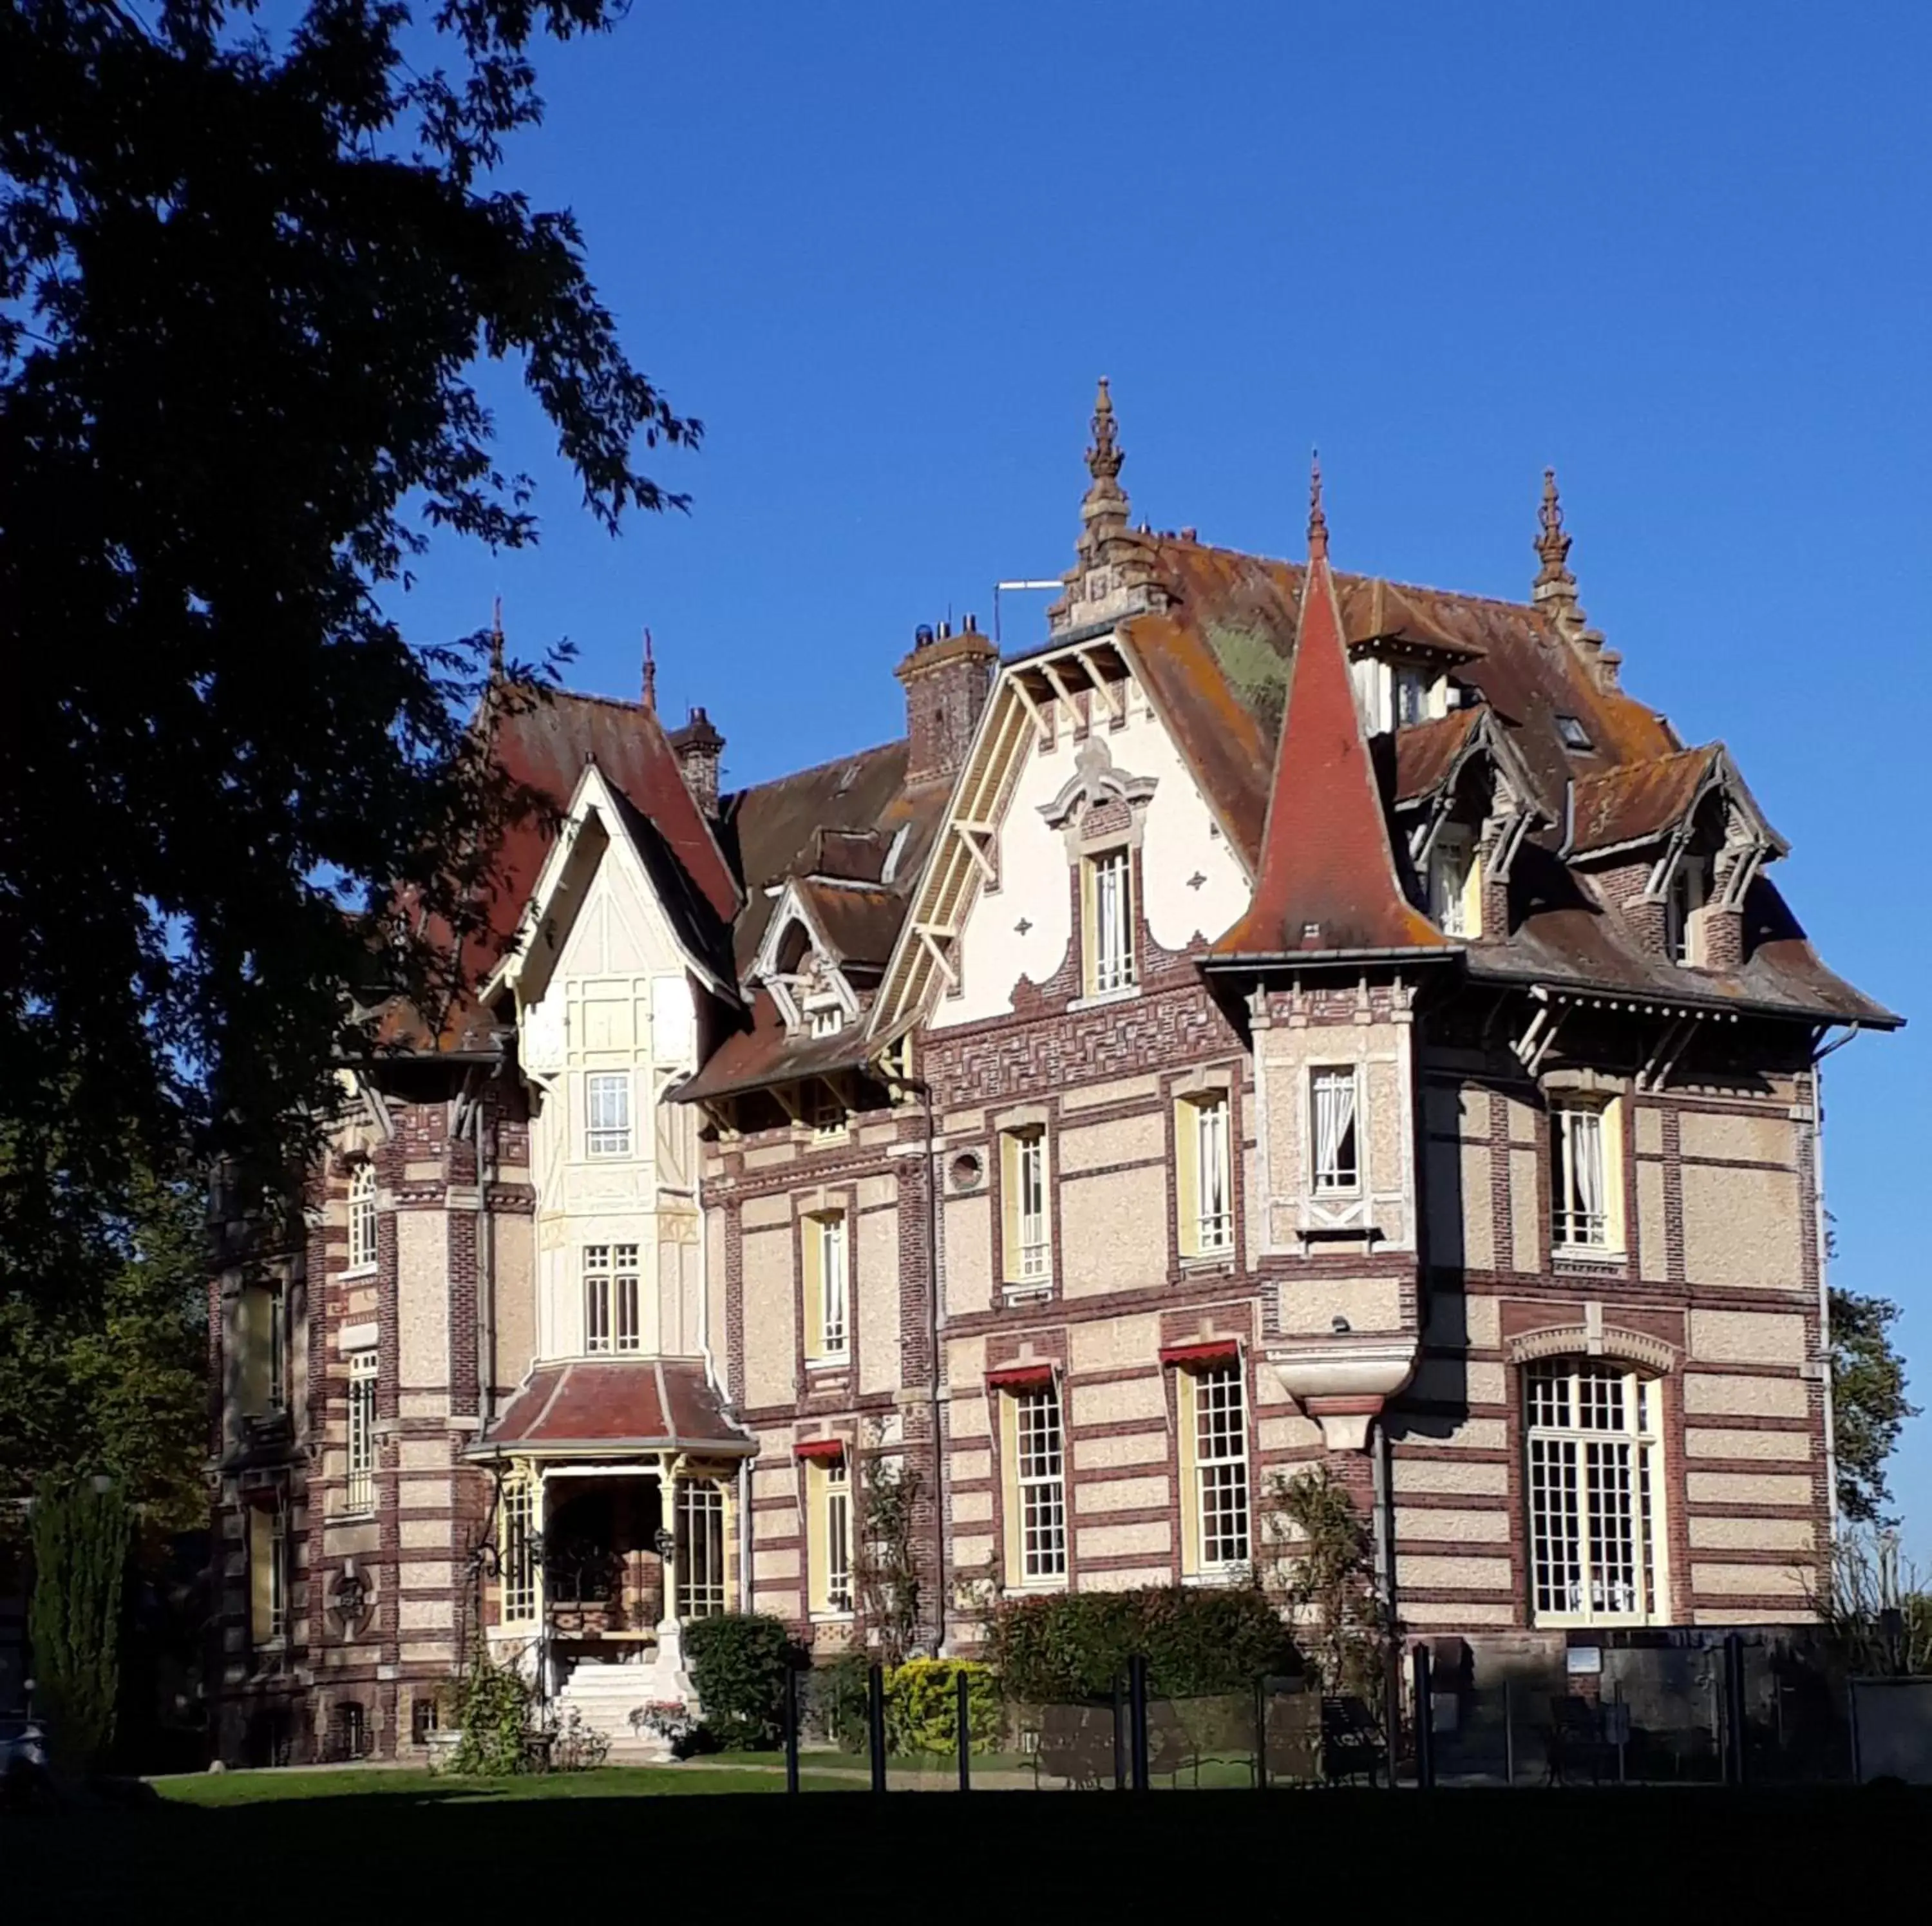 Property Building in Château de la Râpée